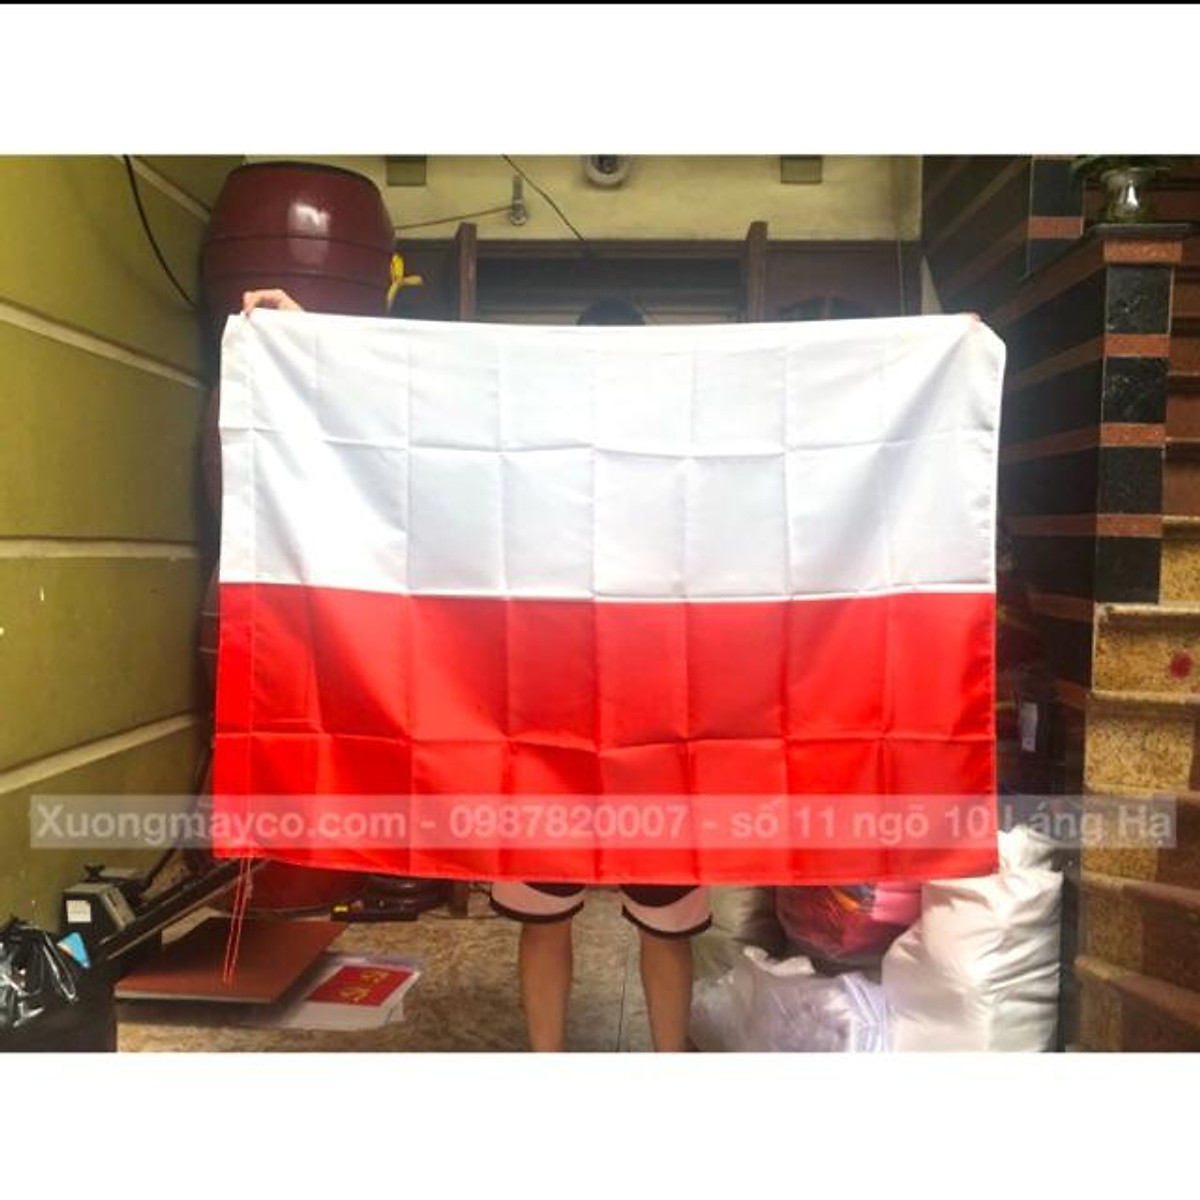 Cờ quốc kỳ Ba Lan: Cờ quốc kỳ Ba Lan vẫn tự hào hiện diện trên khắp các nơi trên thế giới, tượng trưng cho lòng yêu nước và tinh thần độc lập. Hãy cùng đón xem hình ảnh đẹp của cờ quốc kỳ Ba Lan để cảm nhận sự kiêu hãnh và mãnh liệt của dân tộc Ba Lan.